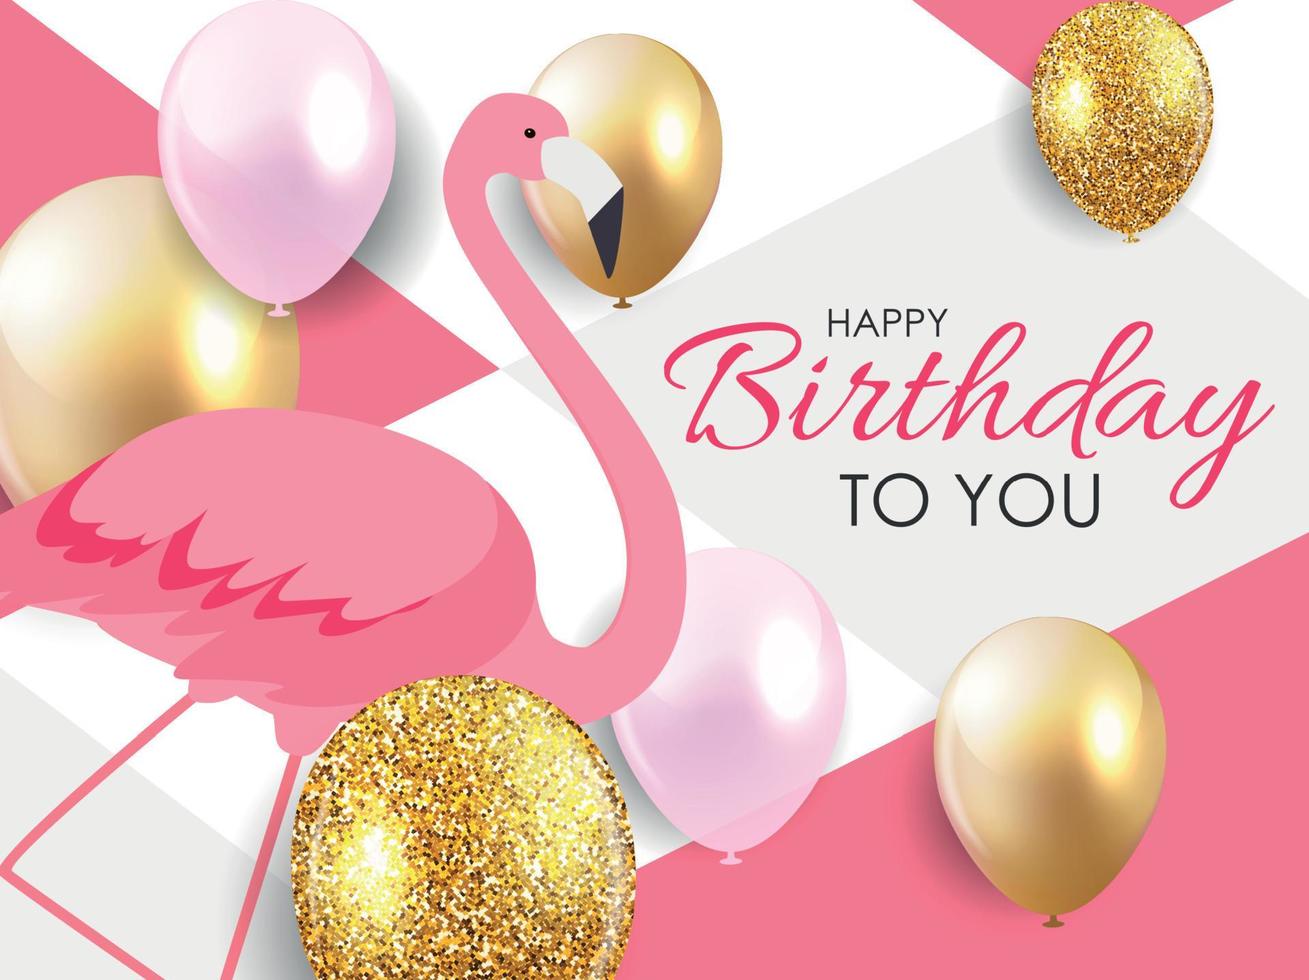 kleurrijke cartoon roze flamingo op een mooie achtergrond wenskaart voor verjaardagsgroeten. vector illustratie